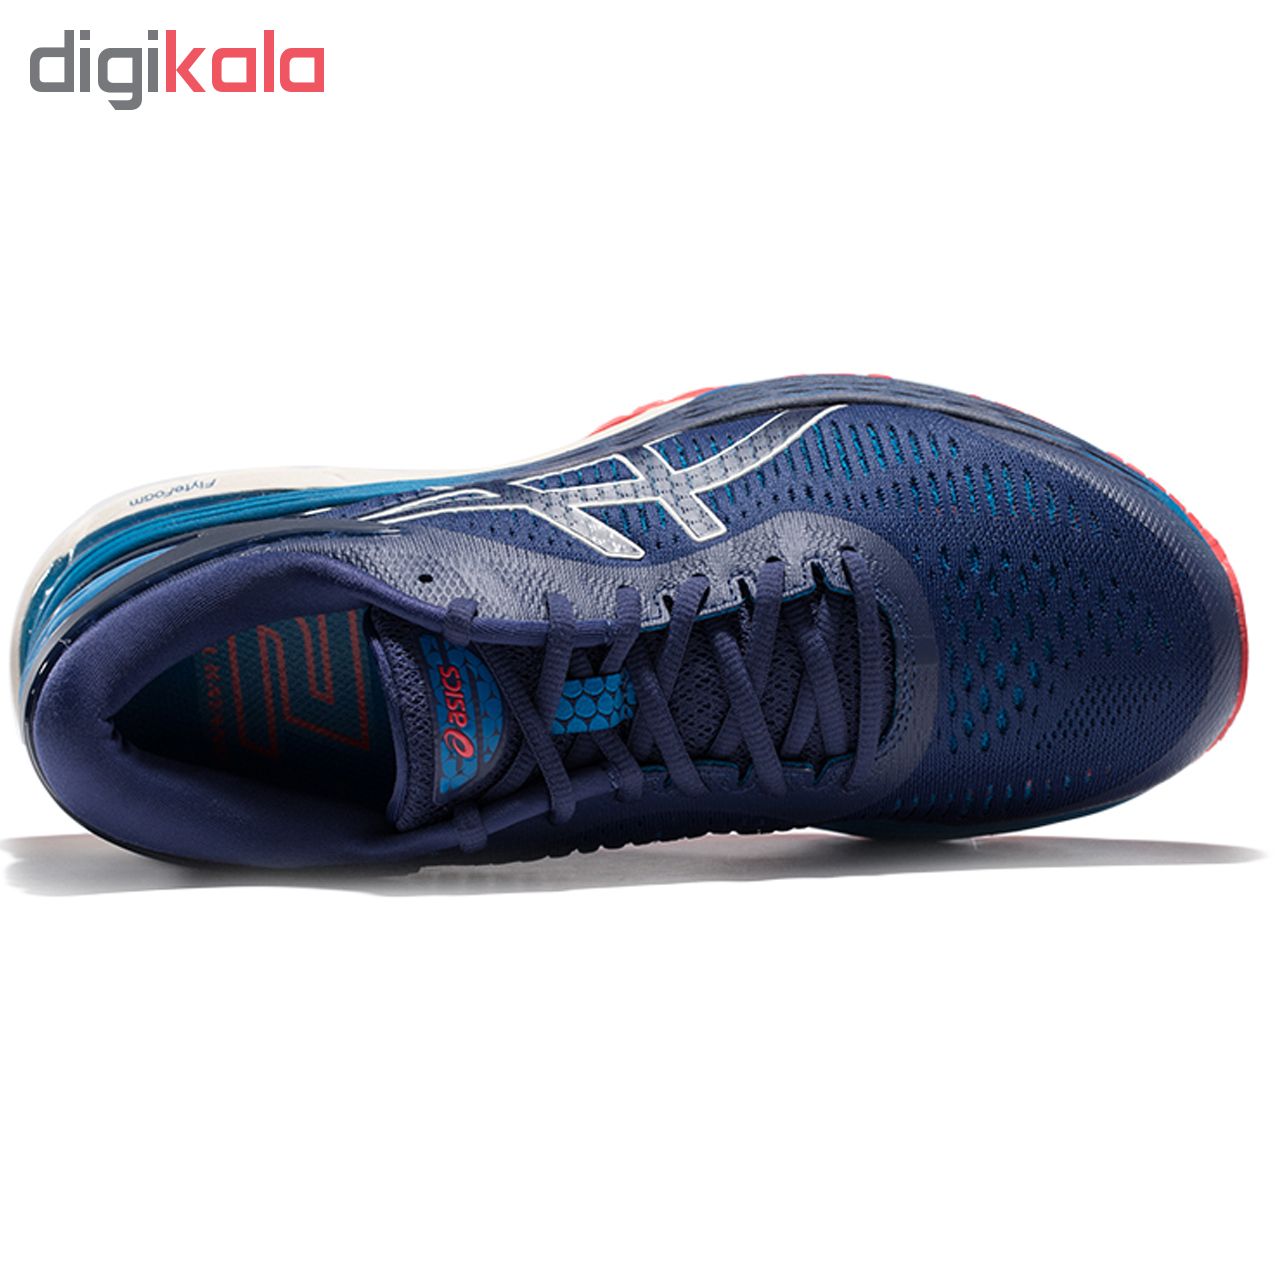  کفش مخصوص دویدن مردانه اسیکس مدل   kayano کد T8-8754